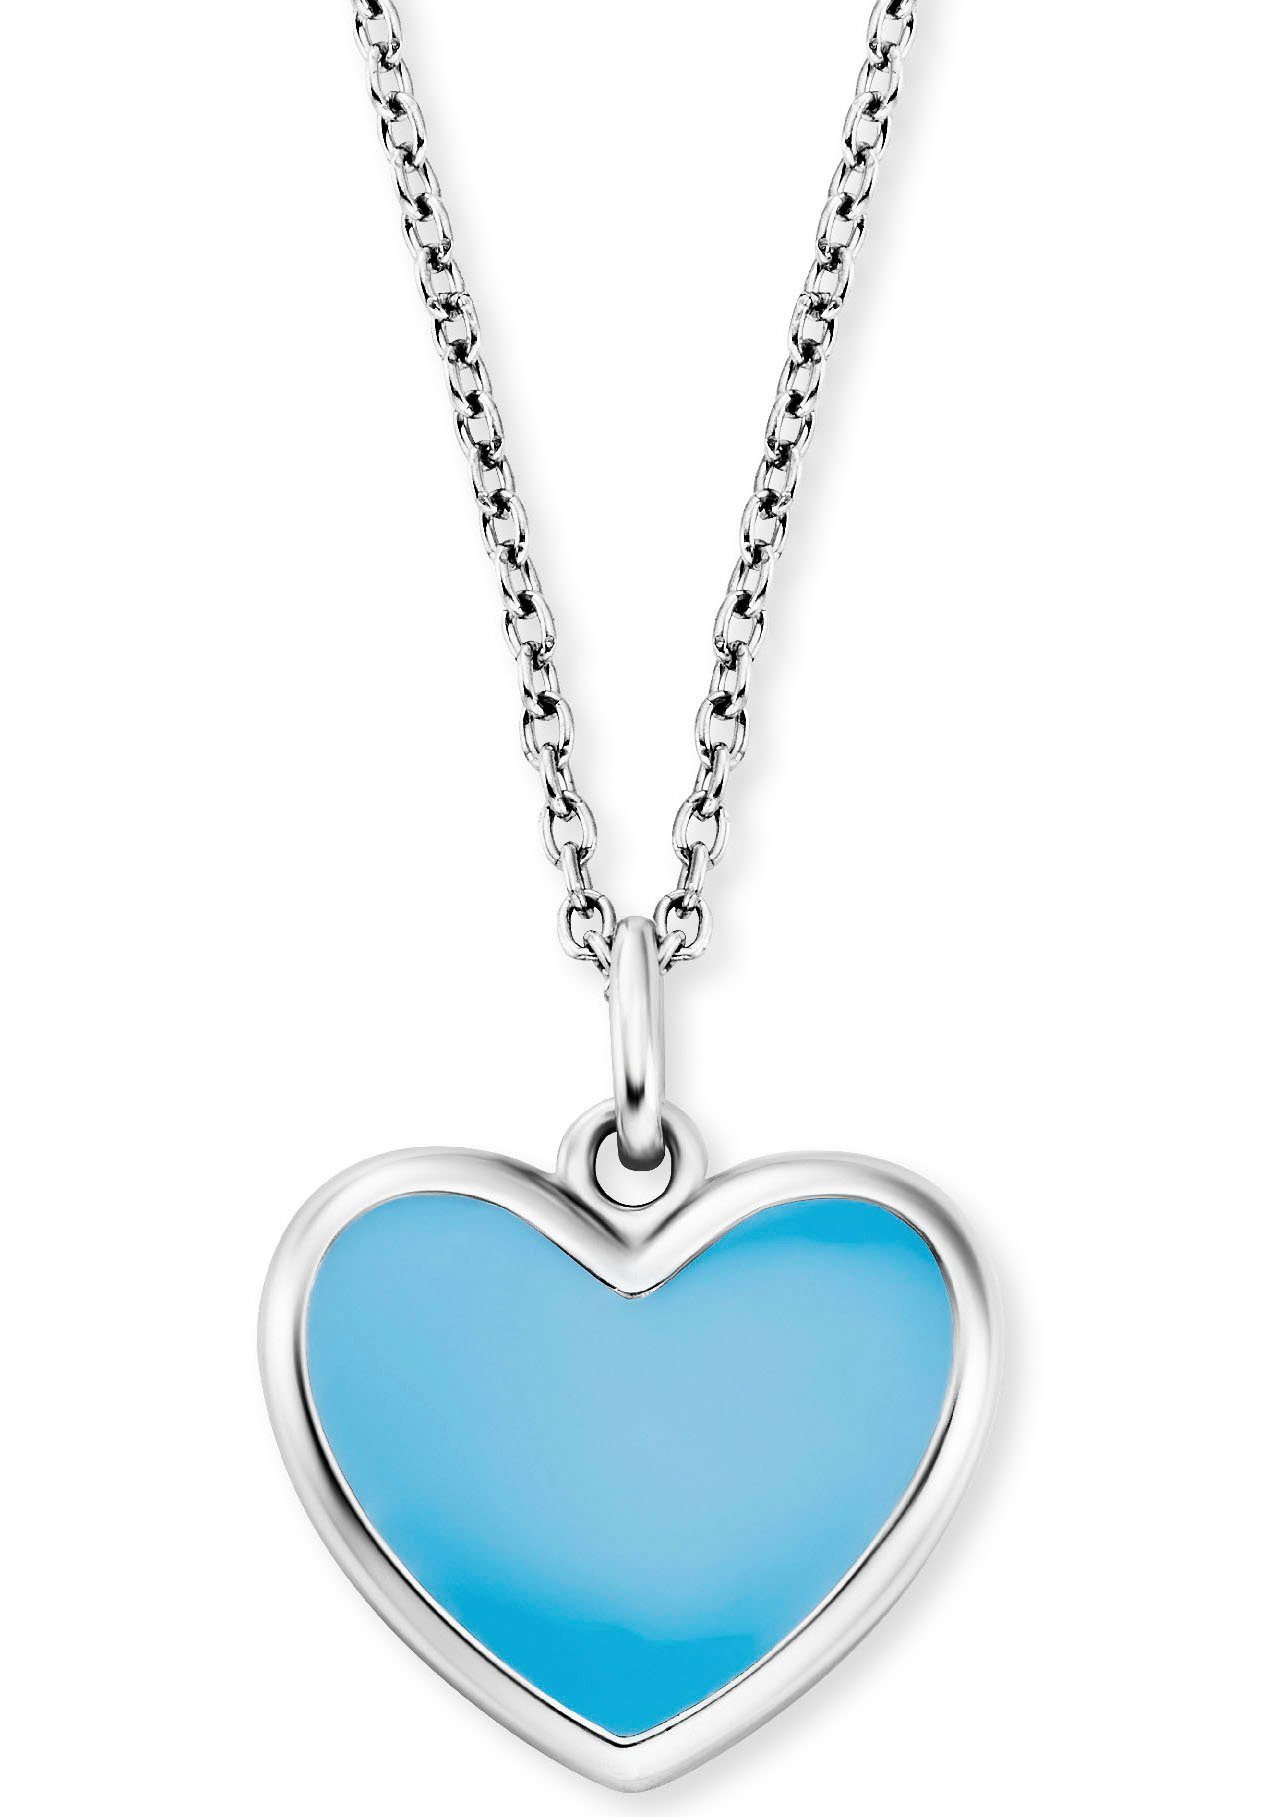 mit Anhänger Kette HEN-HEART-06, HEN-HEART-13 silberfarben-blau Heart, Little Herzengel Geschenk, Herz, Schmuck